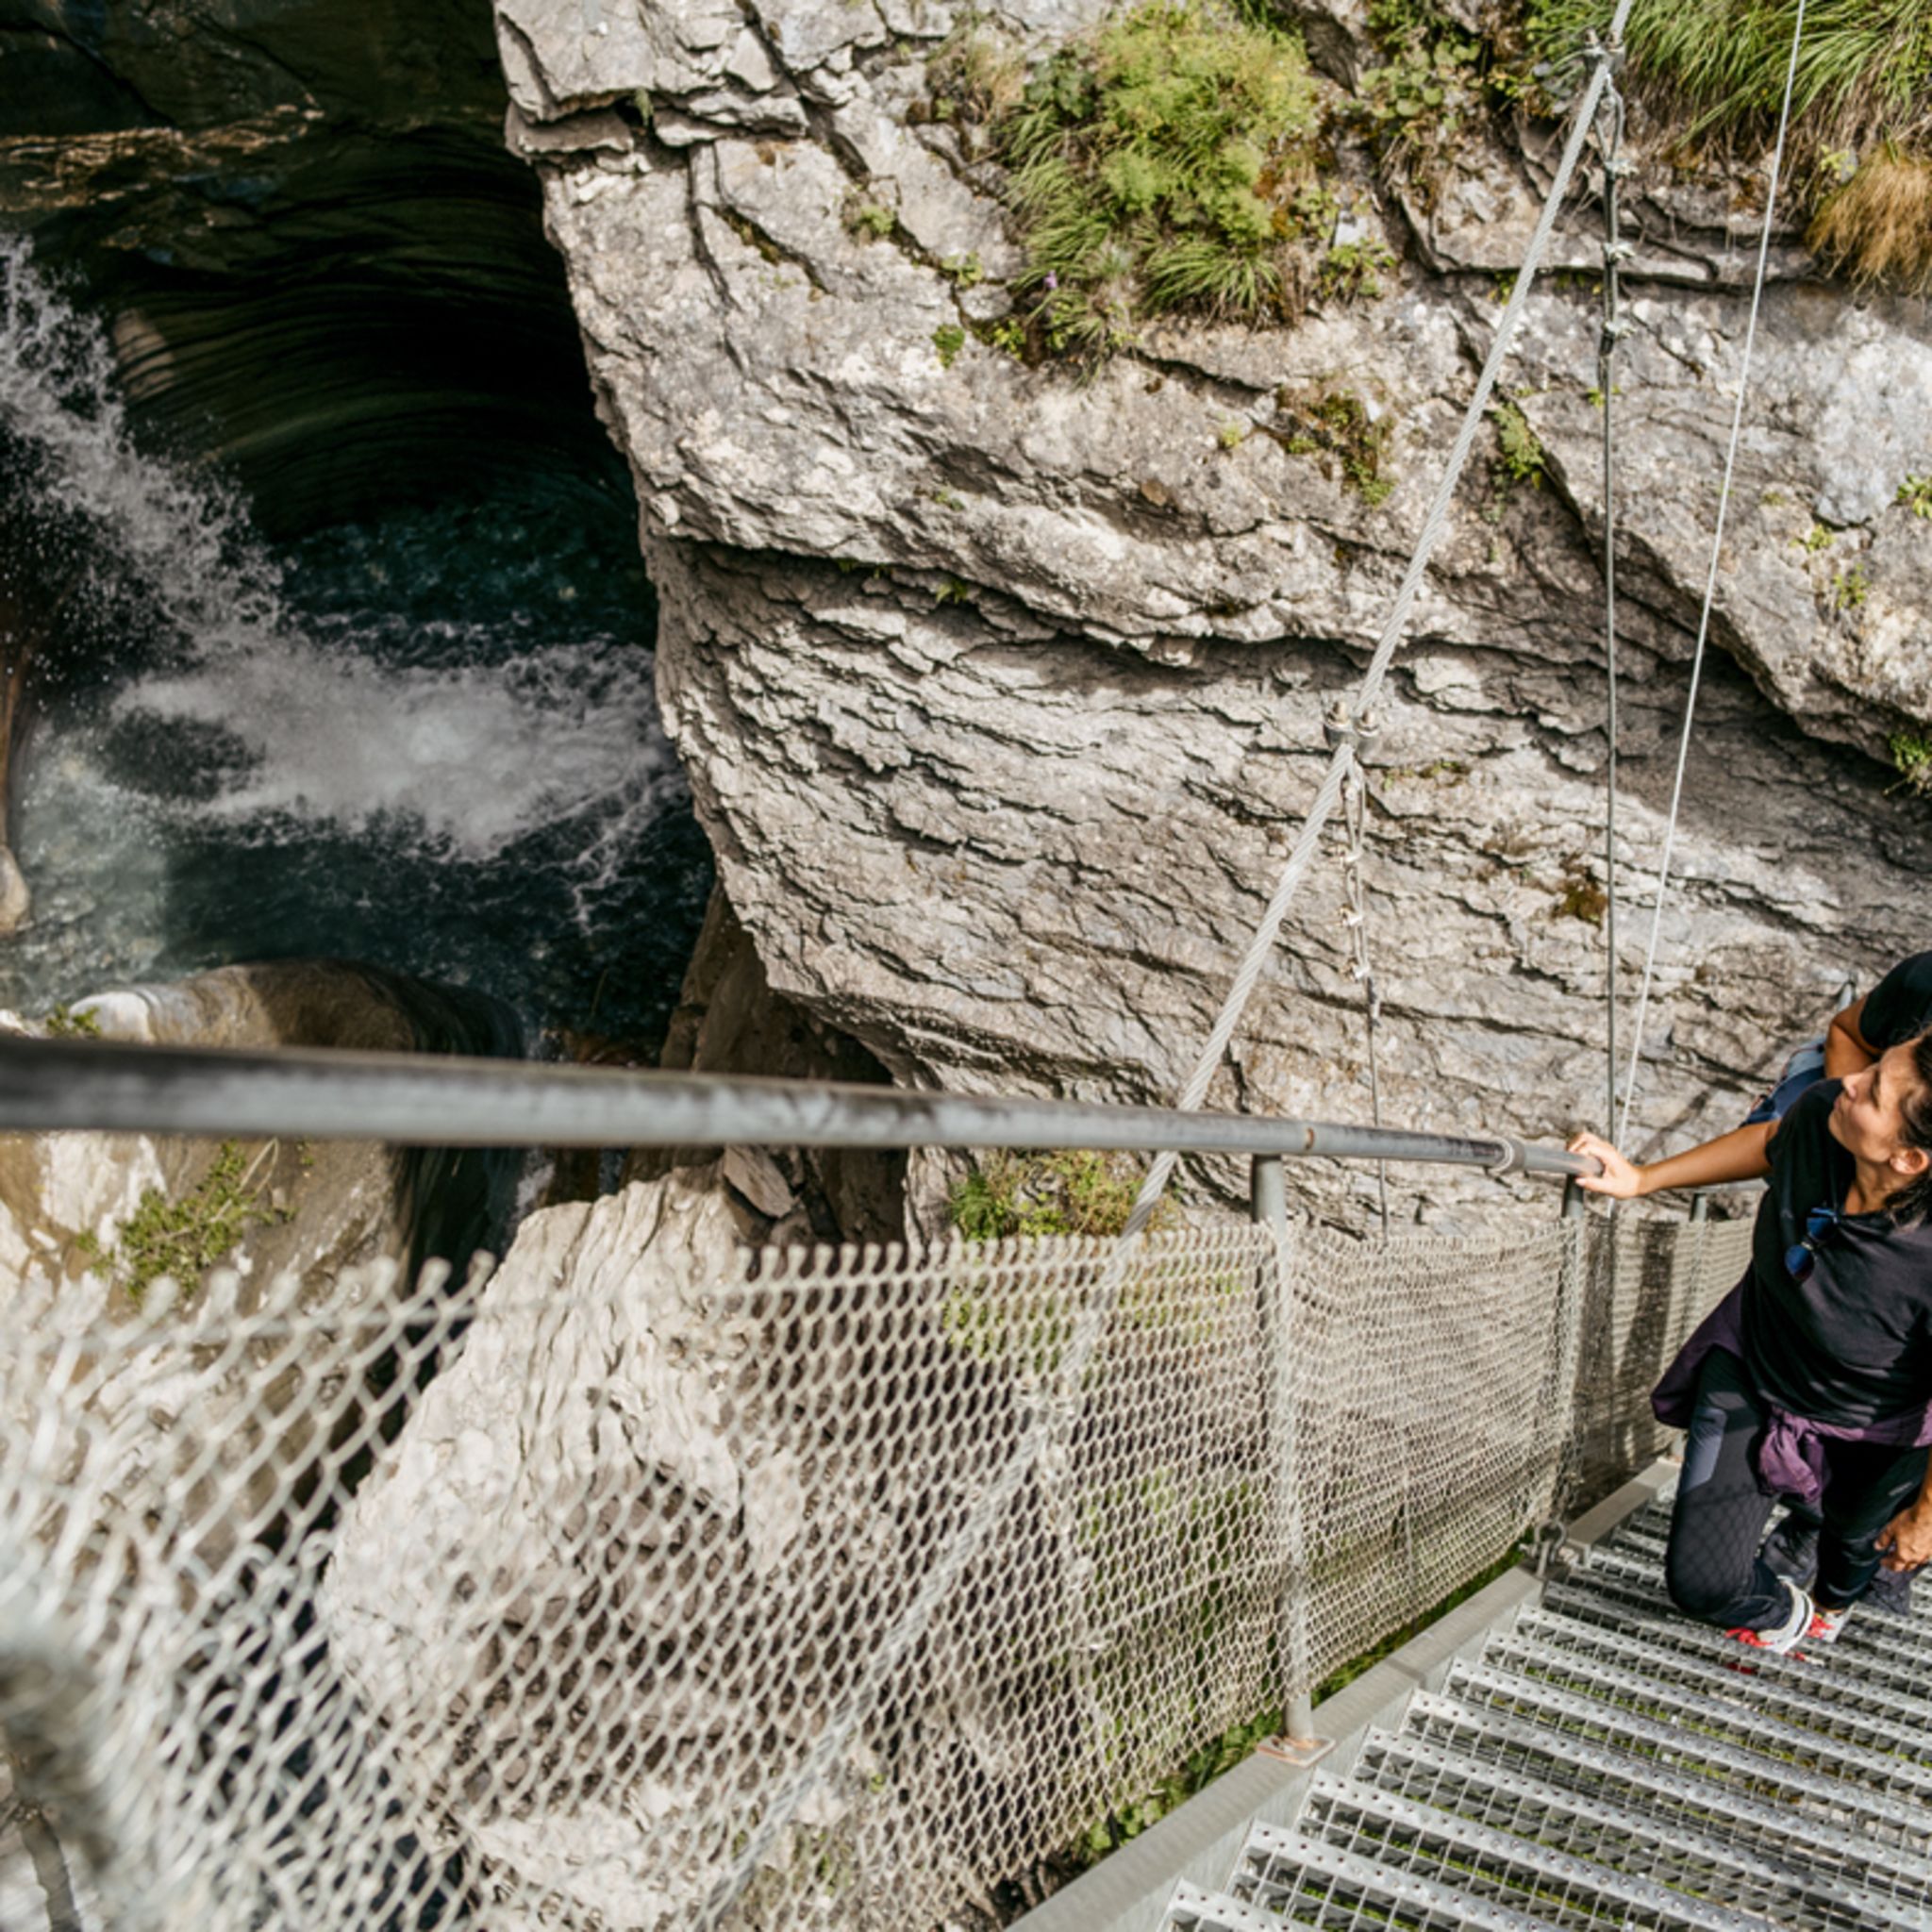 Von den zwei steilen Treppen lässt sich der Wasserfall am besten bestaunen, Wallis, Schweiz